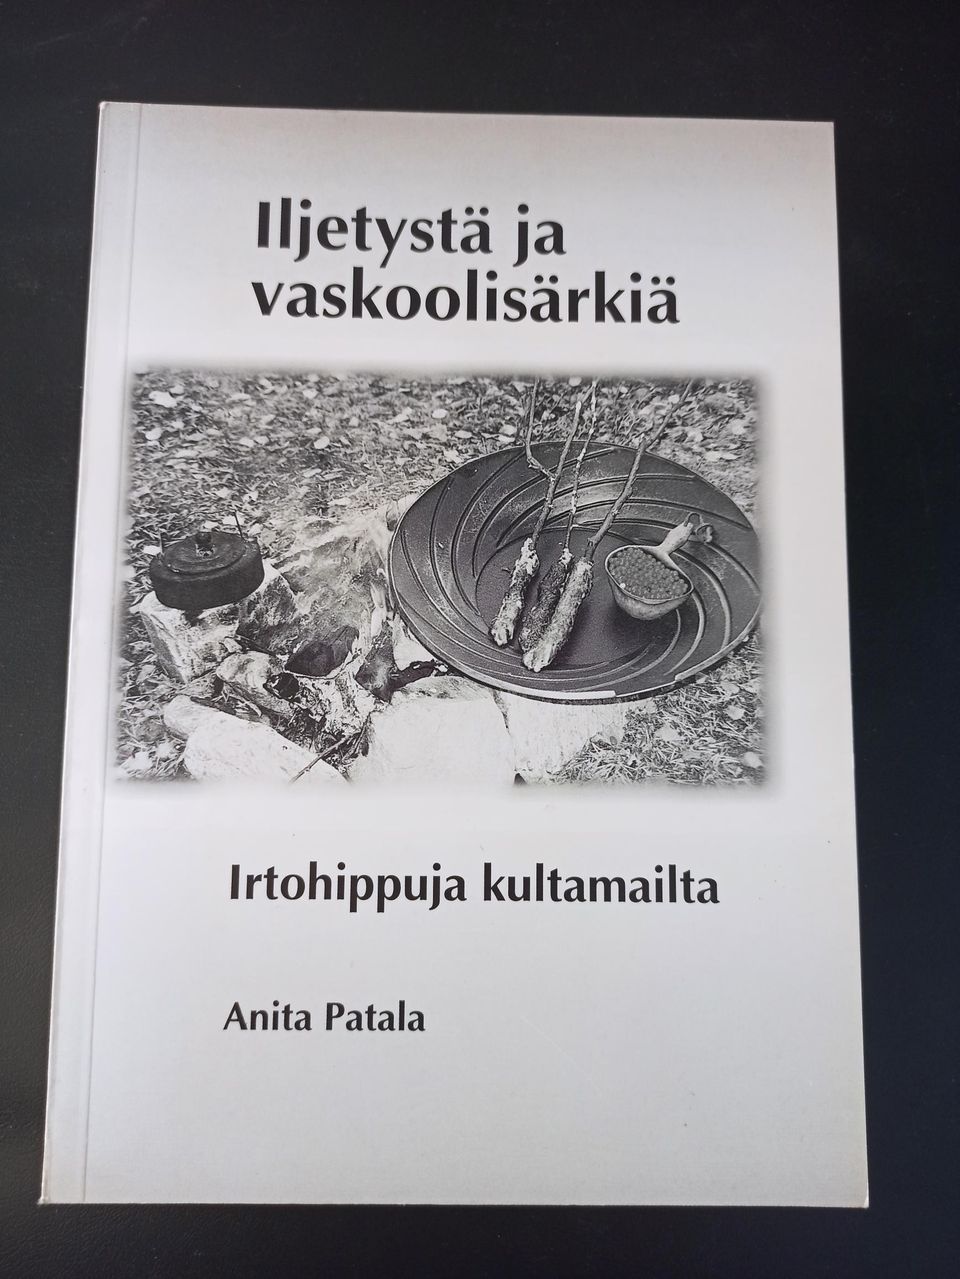 Iljetystä ja vaskoolisärkiä, Anita Patala, v. 2000